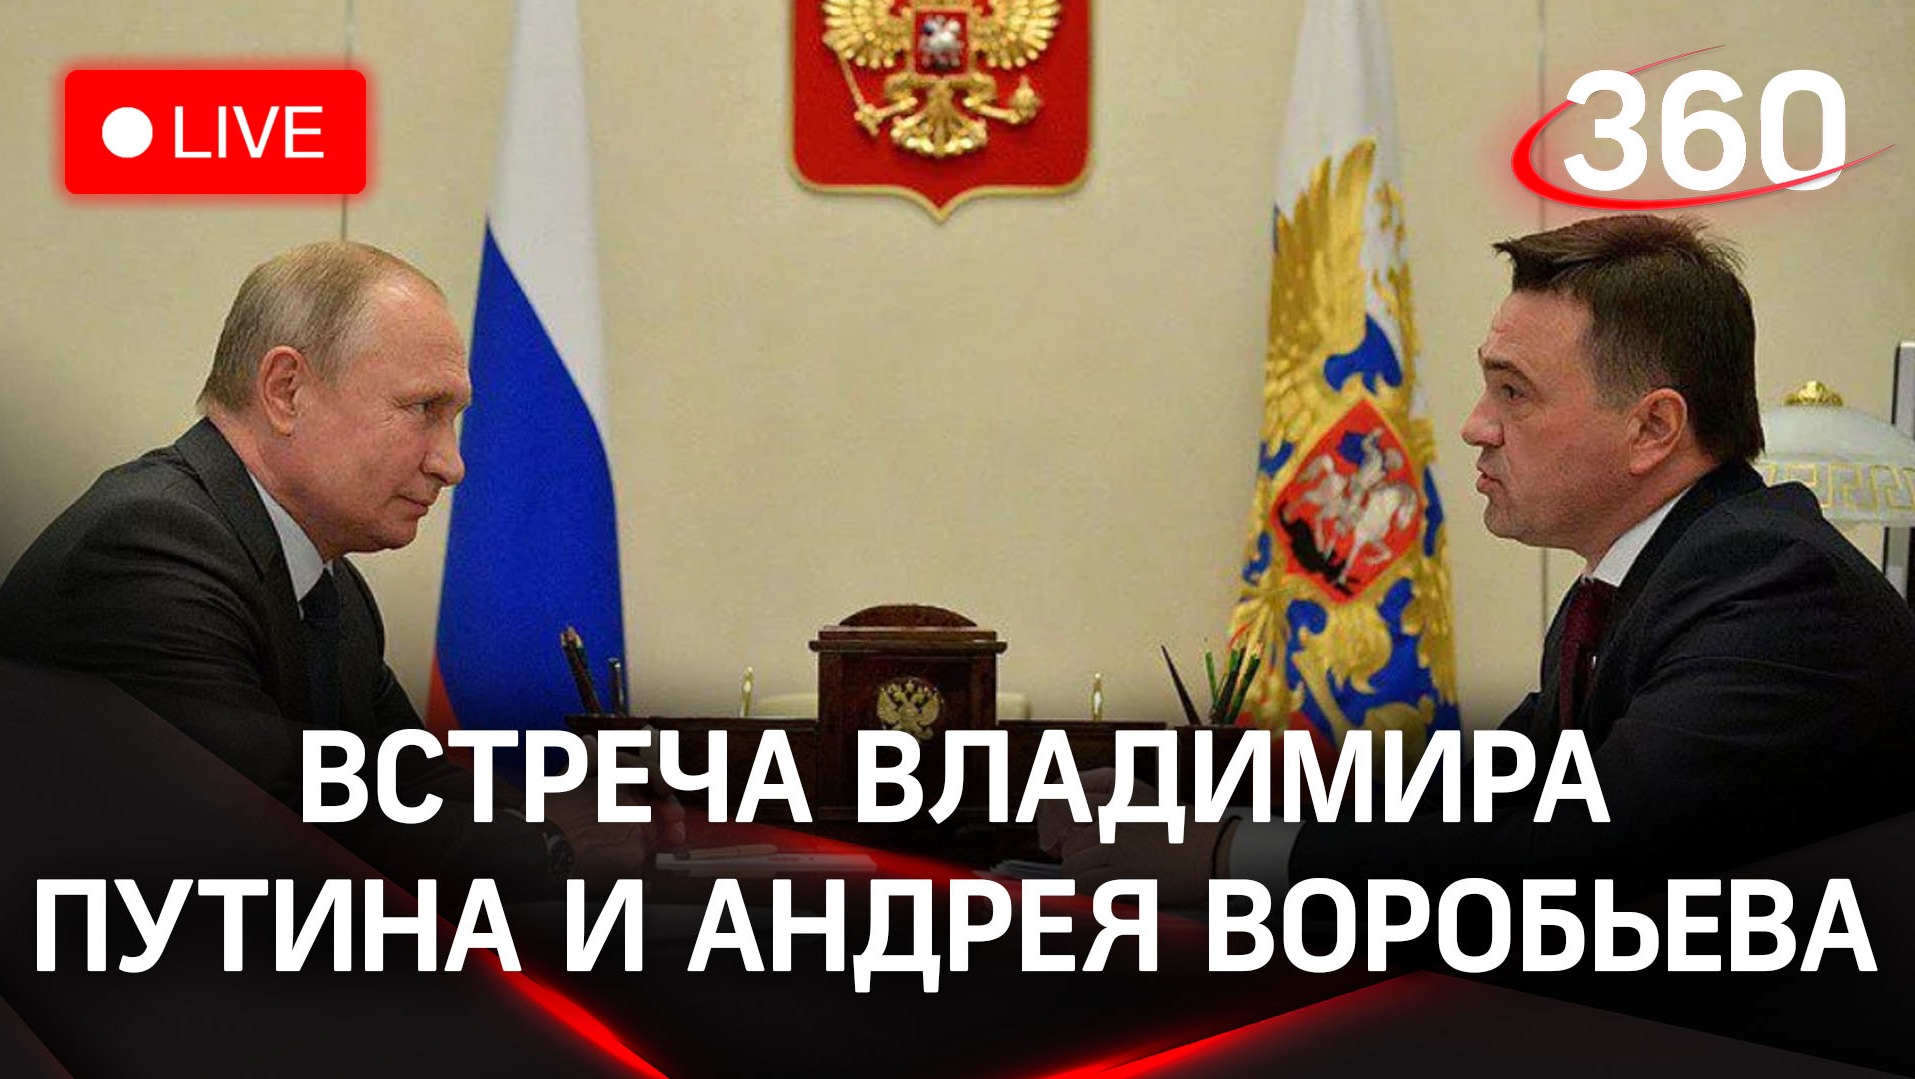 Владимир Путин встретился с Андреем Воробьевым | Трансляция